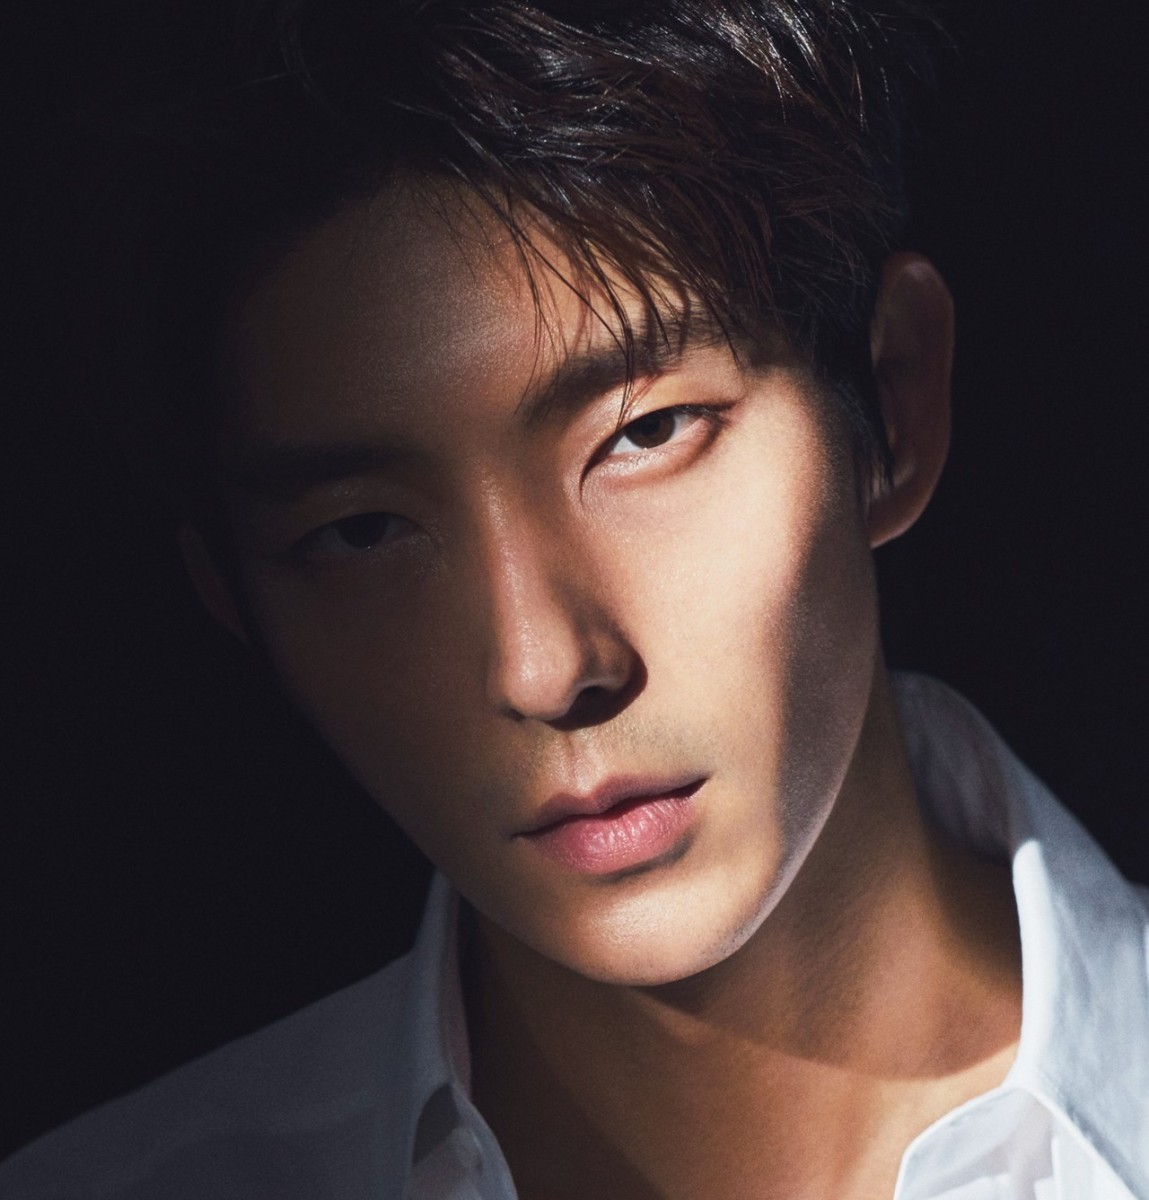 Top 10 Most Popular And Handsome Korean Drama Actors Reelrundown